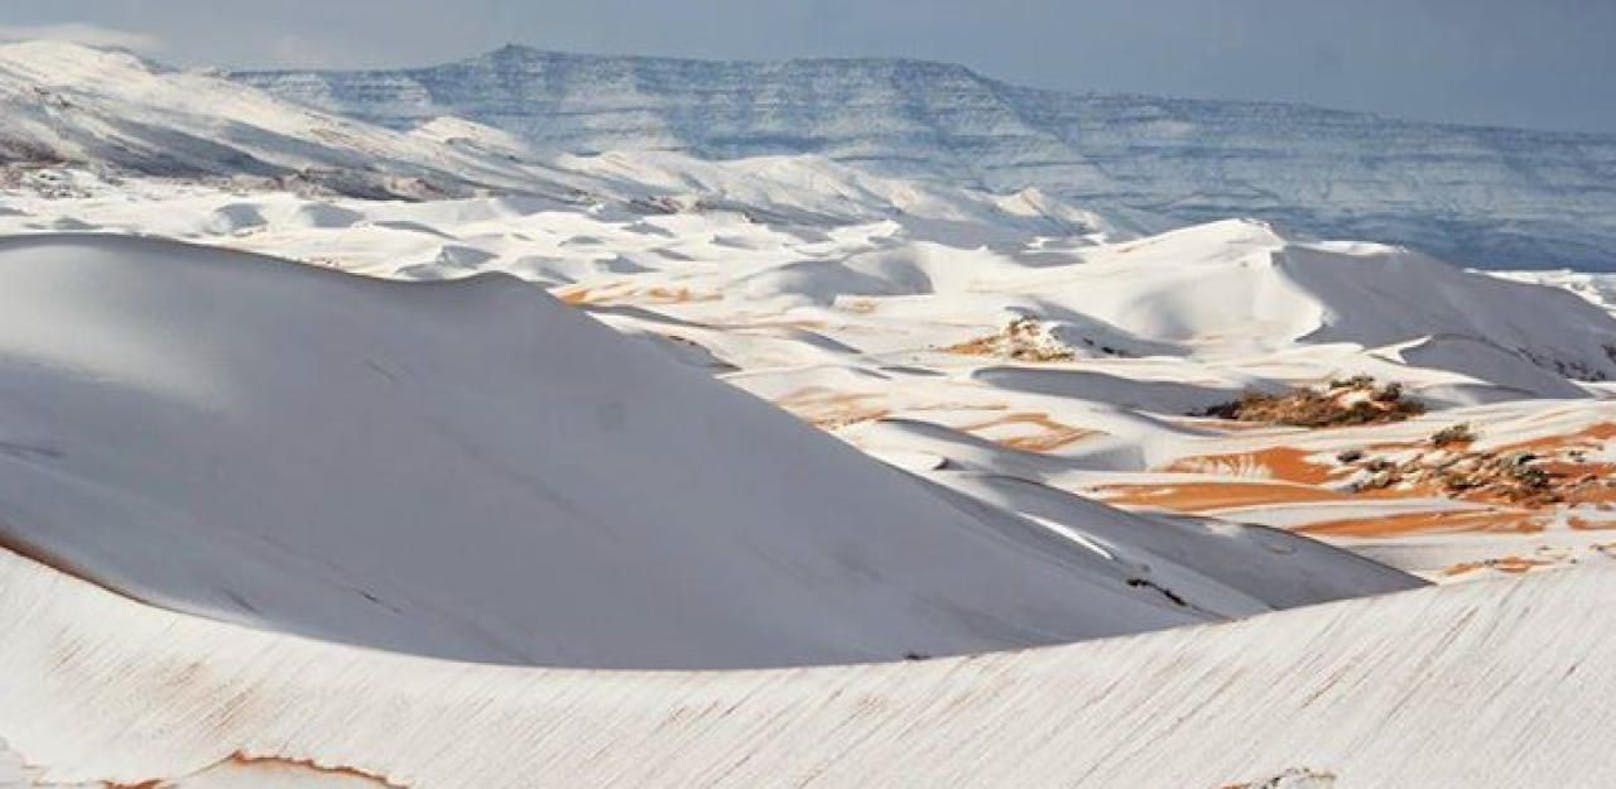 Sogar in der Sahara ist Schnee gefallen